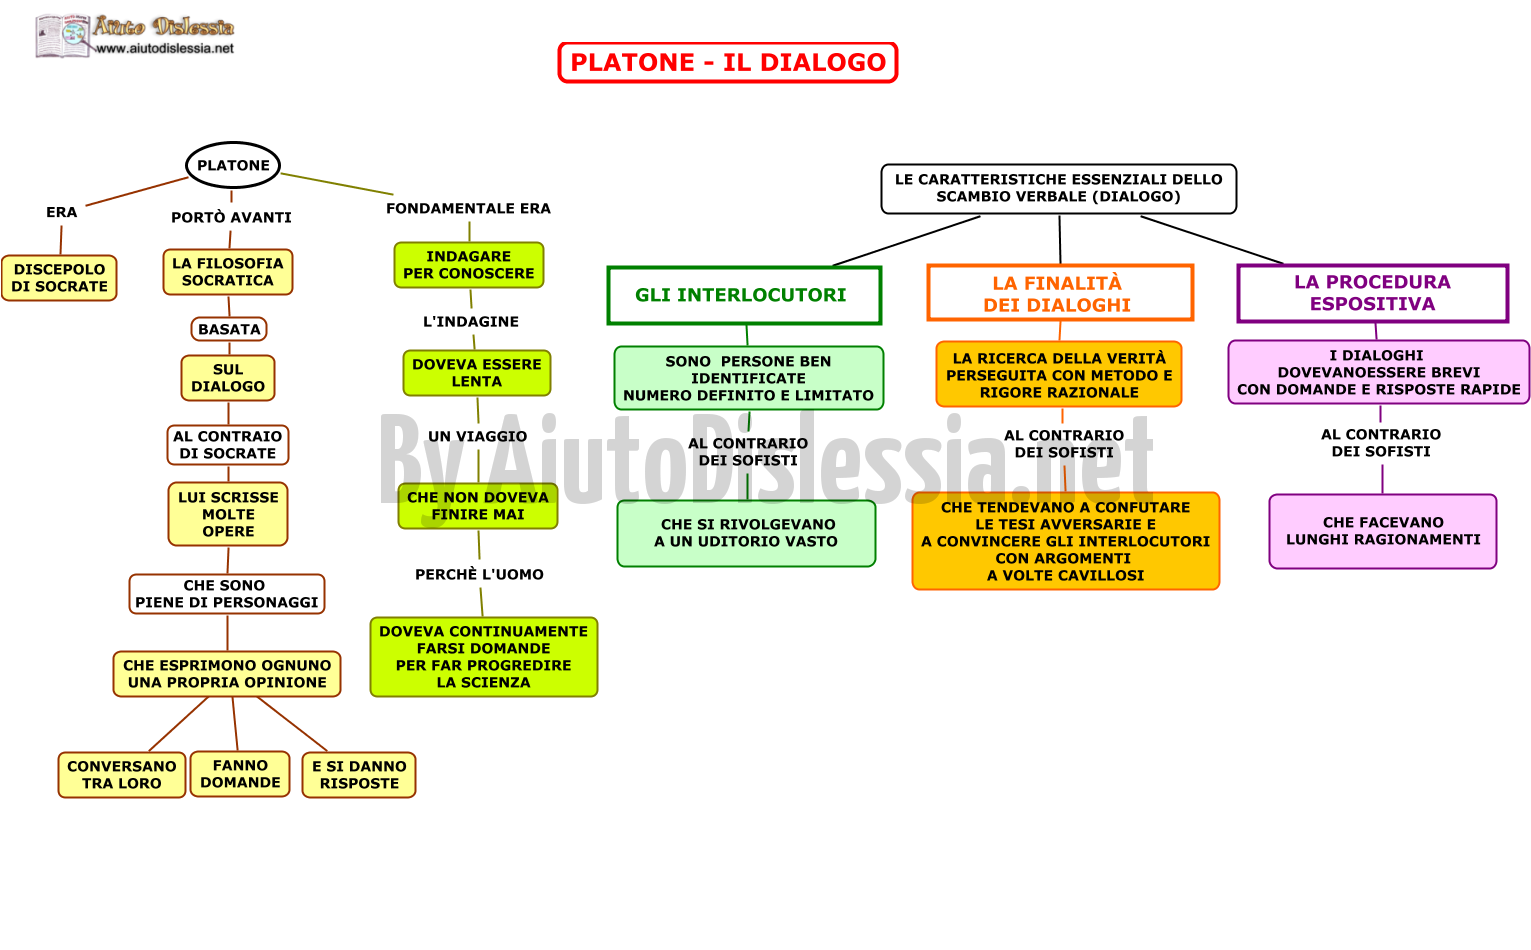 03.-PLATONE-IL-DIALOGO